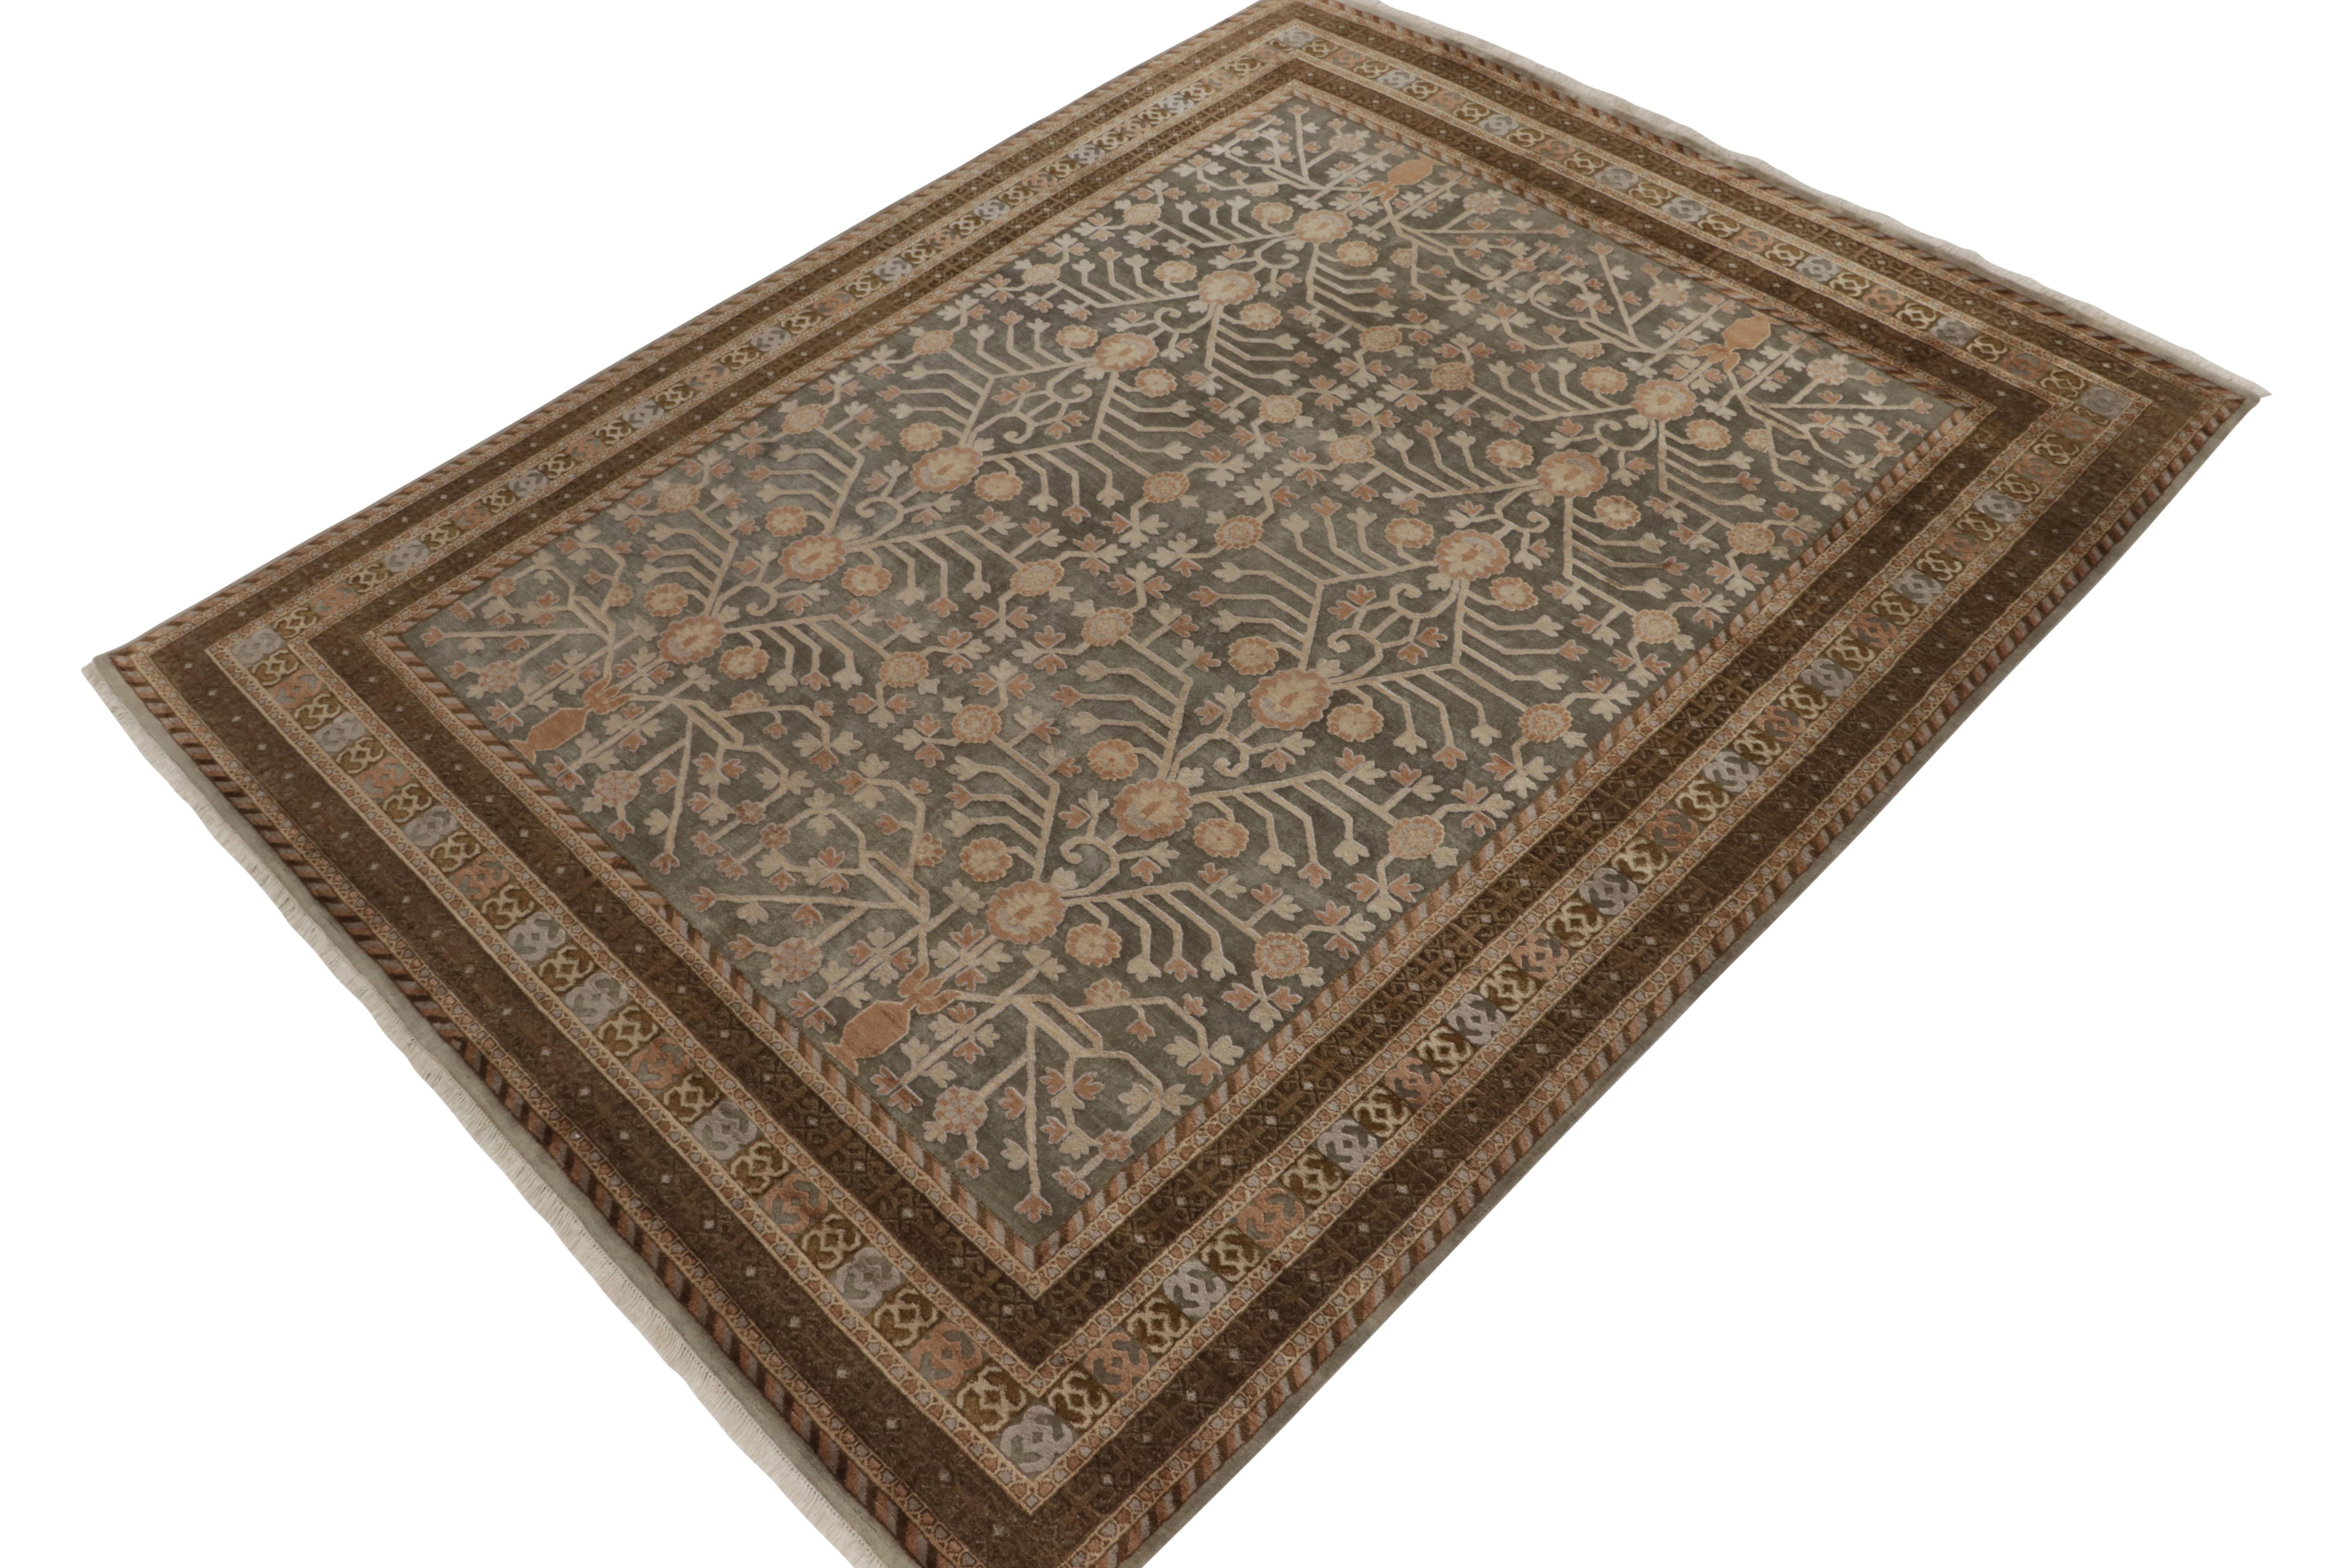 Noué à la main en laine et soie, ce 9x12 de notre collection Modern Classics est une ode aux styles de tapis anciens Khotan-Samarkand. 

Sur le design : La pièce présente une échelle gracieuse et des représentations intrigantes en bleu grisâtre et